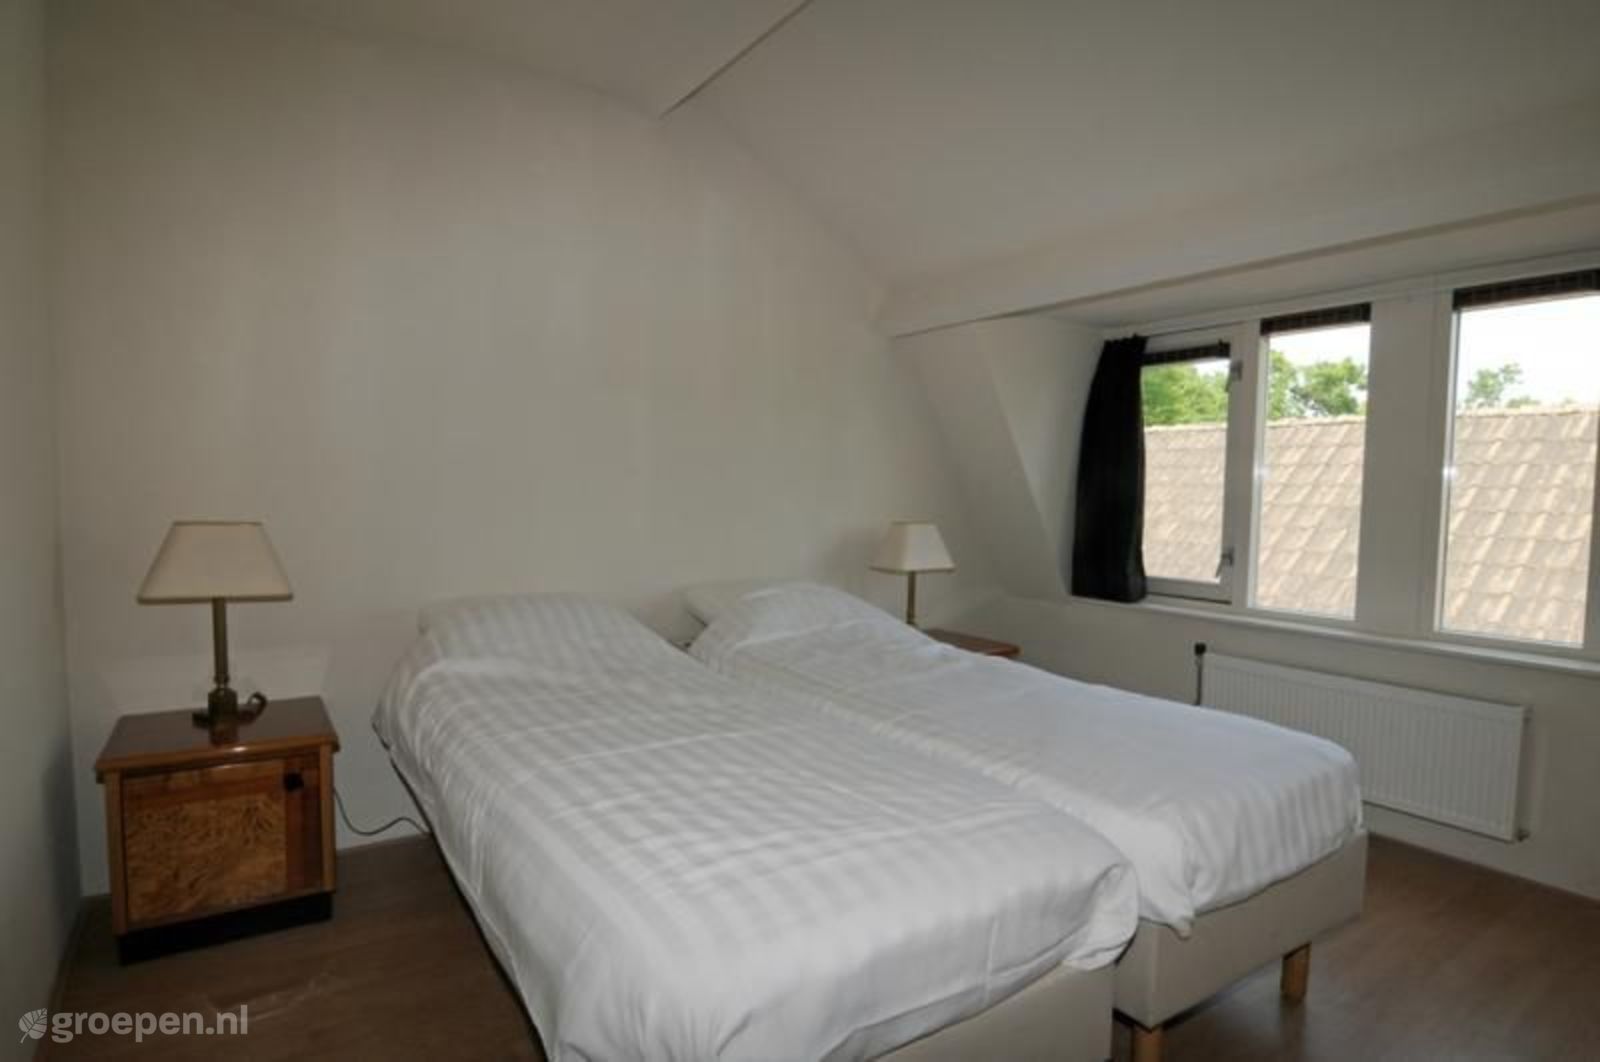 Group accommodation Veulen